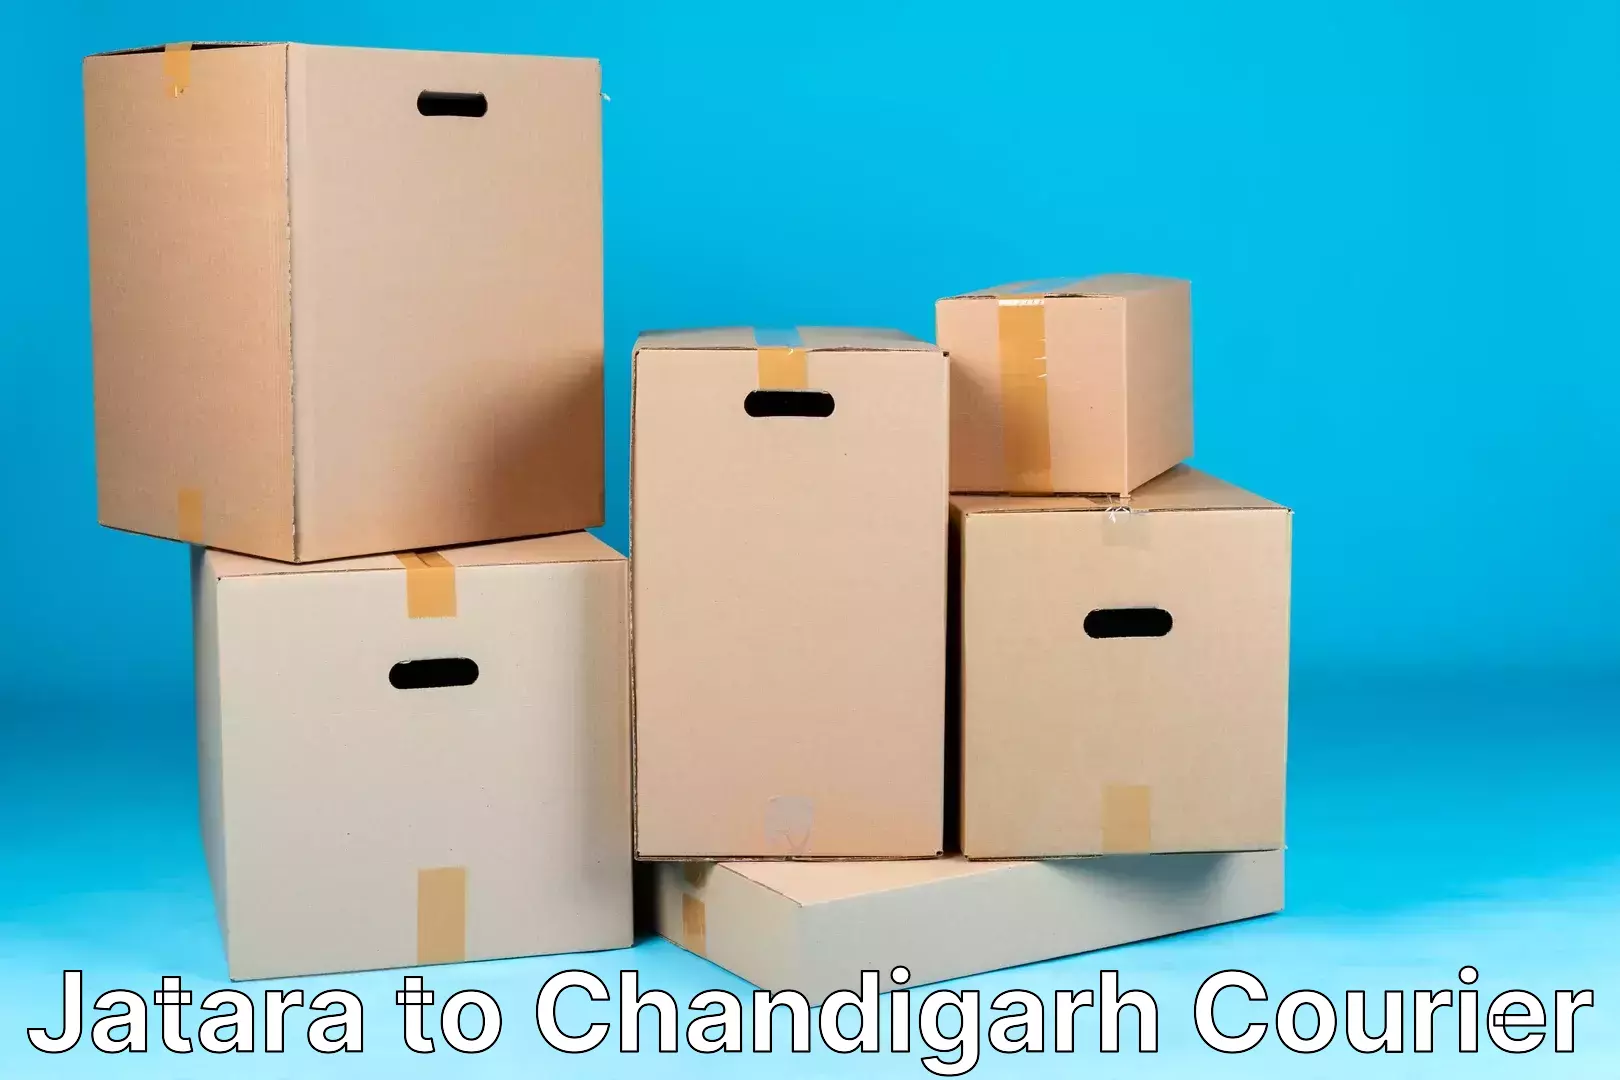 Seamless shipping experience Jatara to Chandigarh